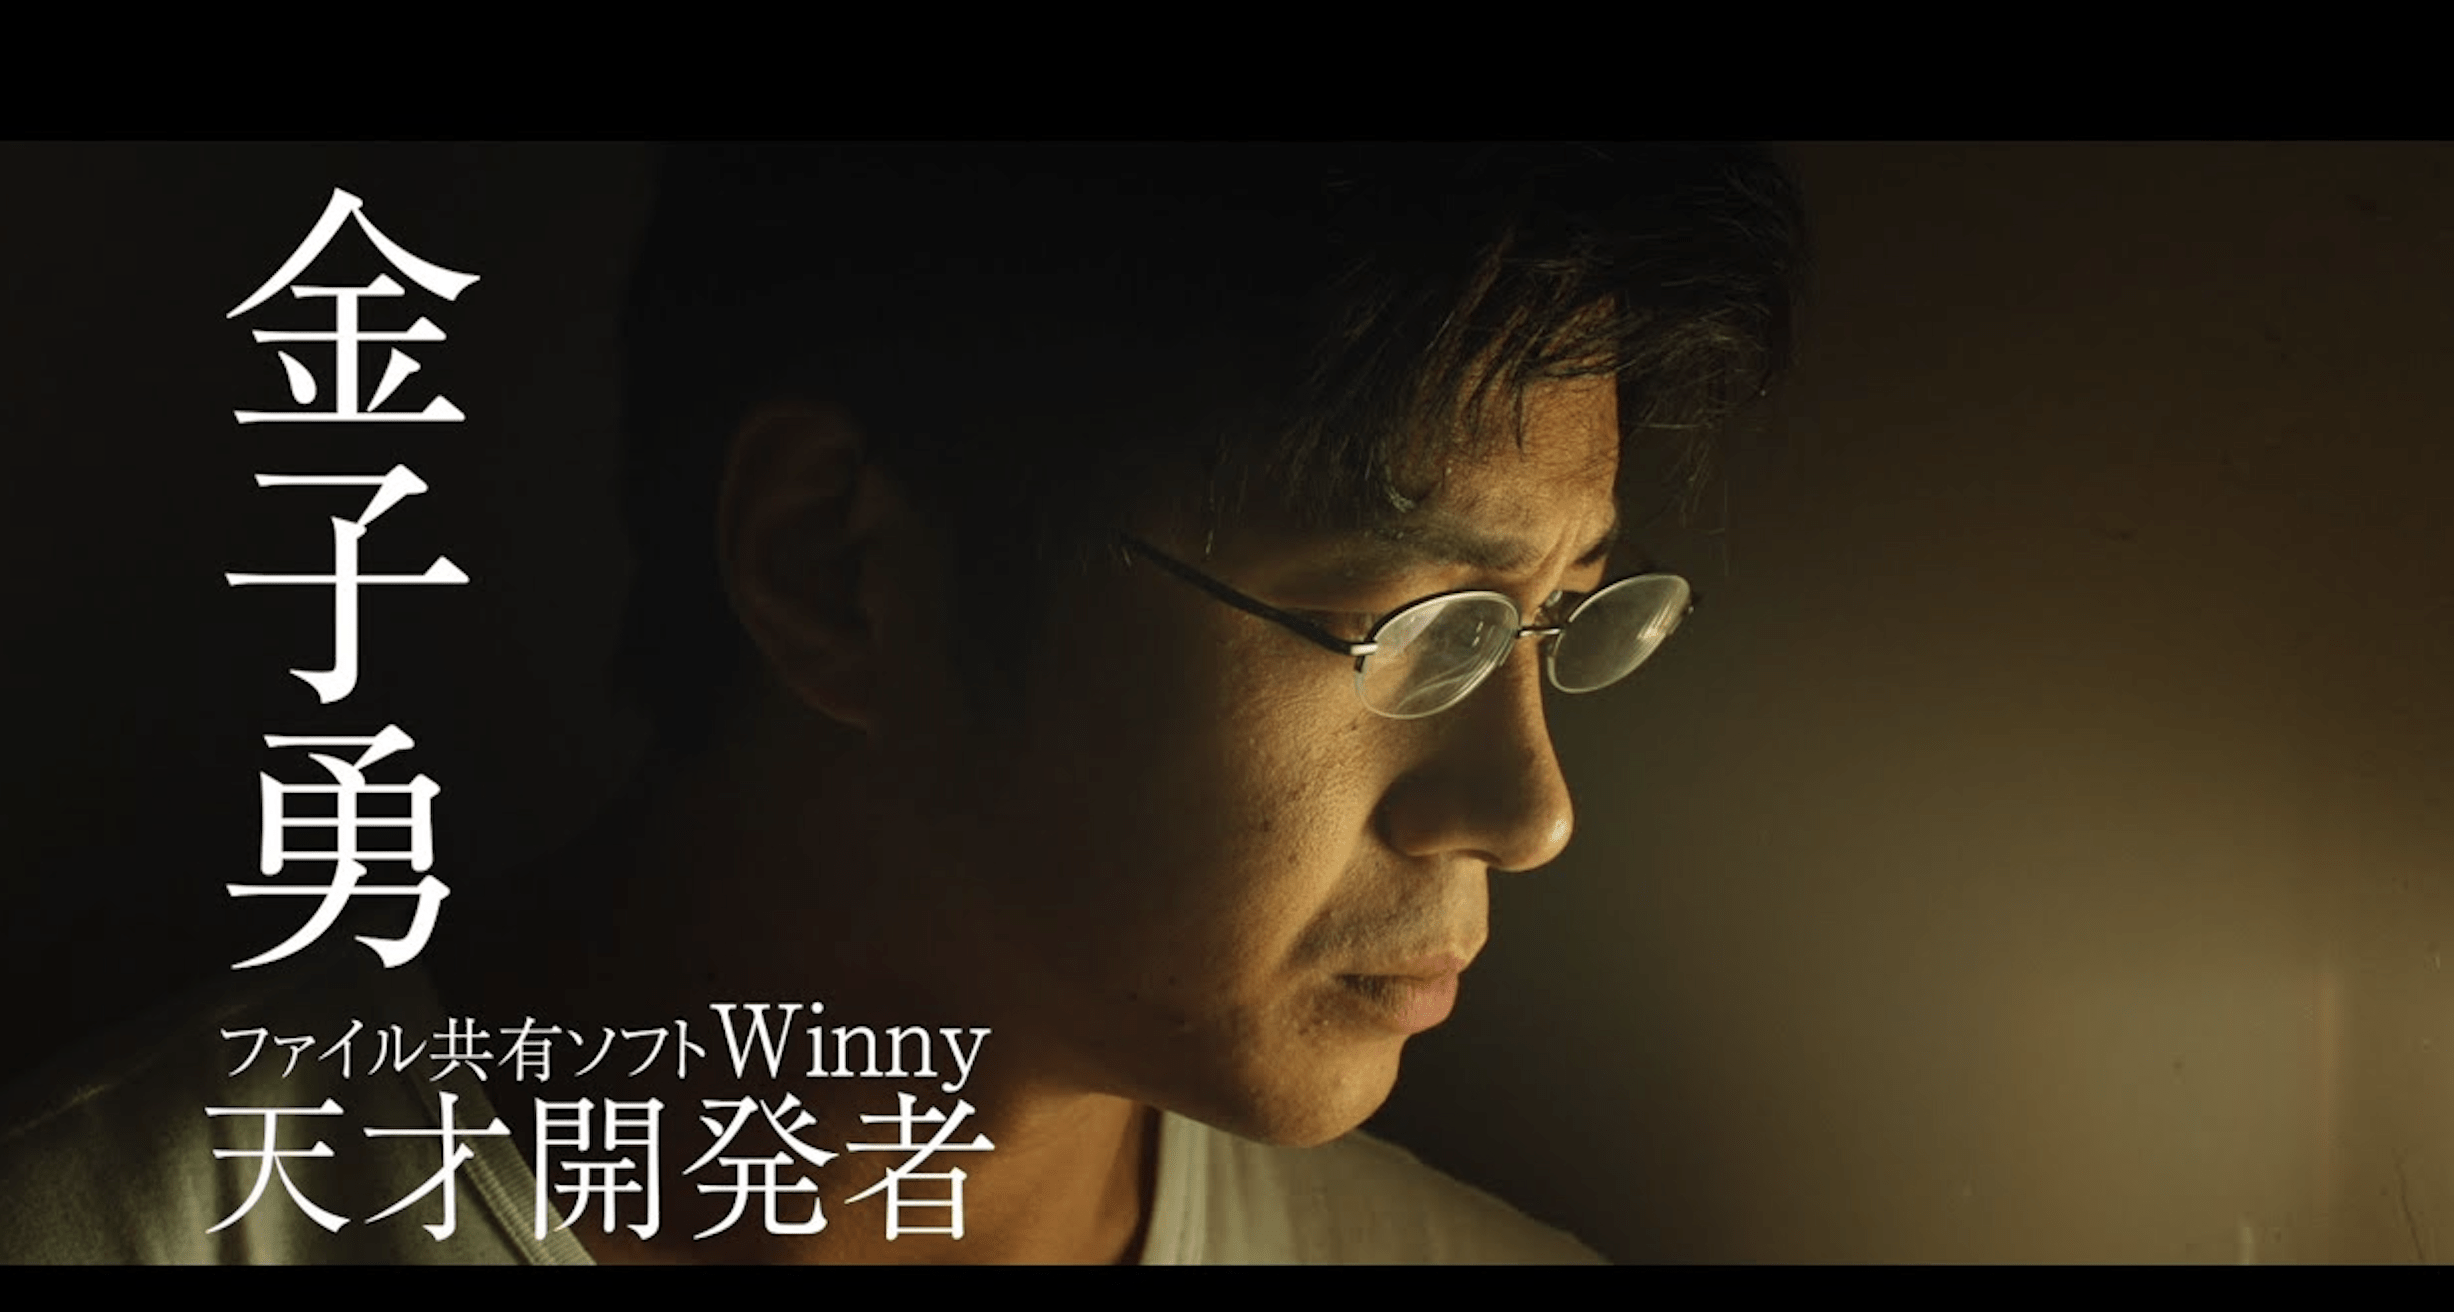 映画で再び注目される「Winny」開発者は逮捕後、無罪確定、急逝「GAFAの景色変わってたかも」インターネット先駆者から惜しむ声